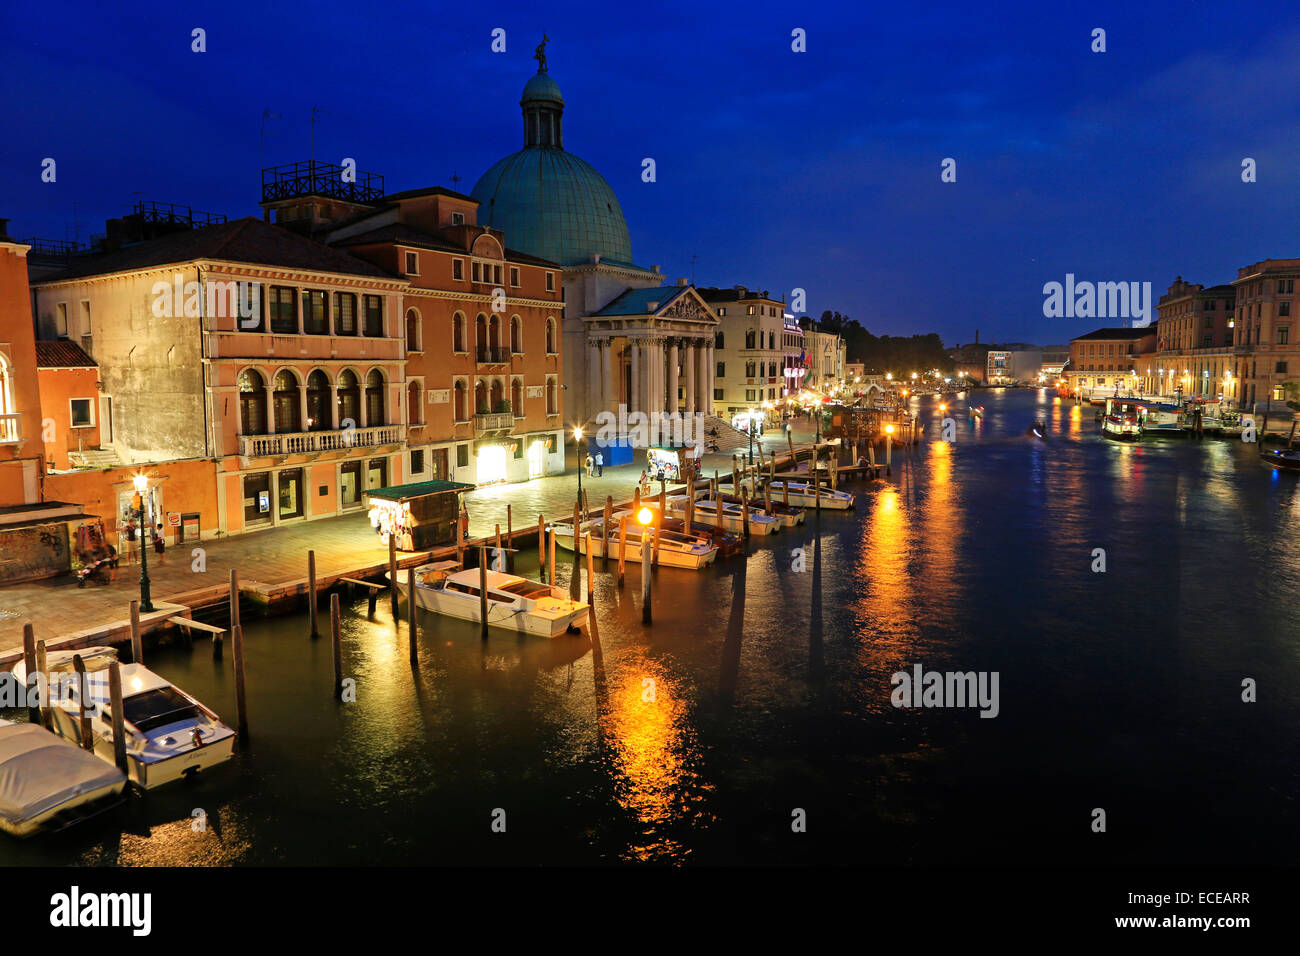 Italia, Venecia, ciudad al atardecer Foto de stock